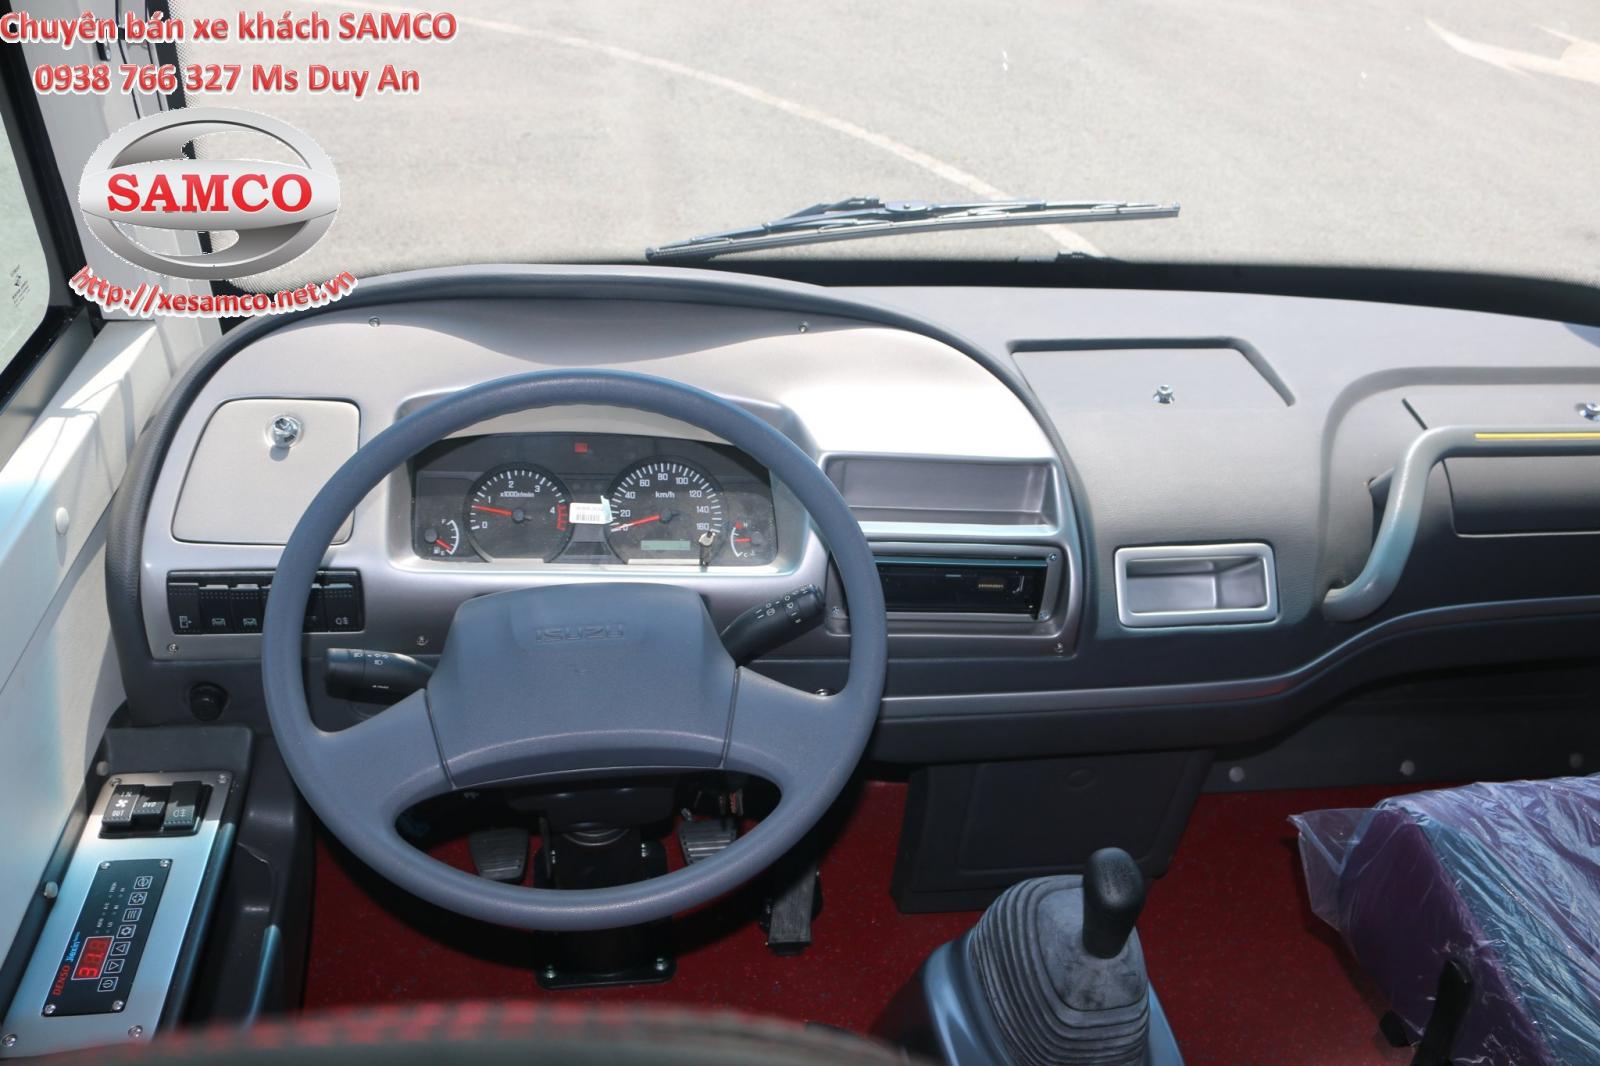 FAW   2020 - Bán xe khách Samco Allergo 29 chỗ ngồi động cơ Isuzu 3.0cc